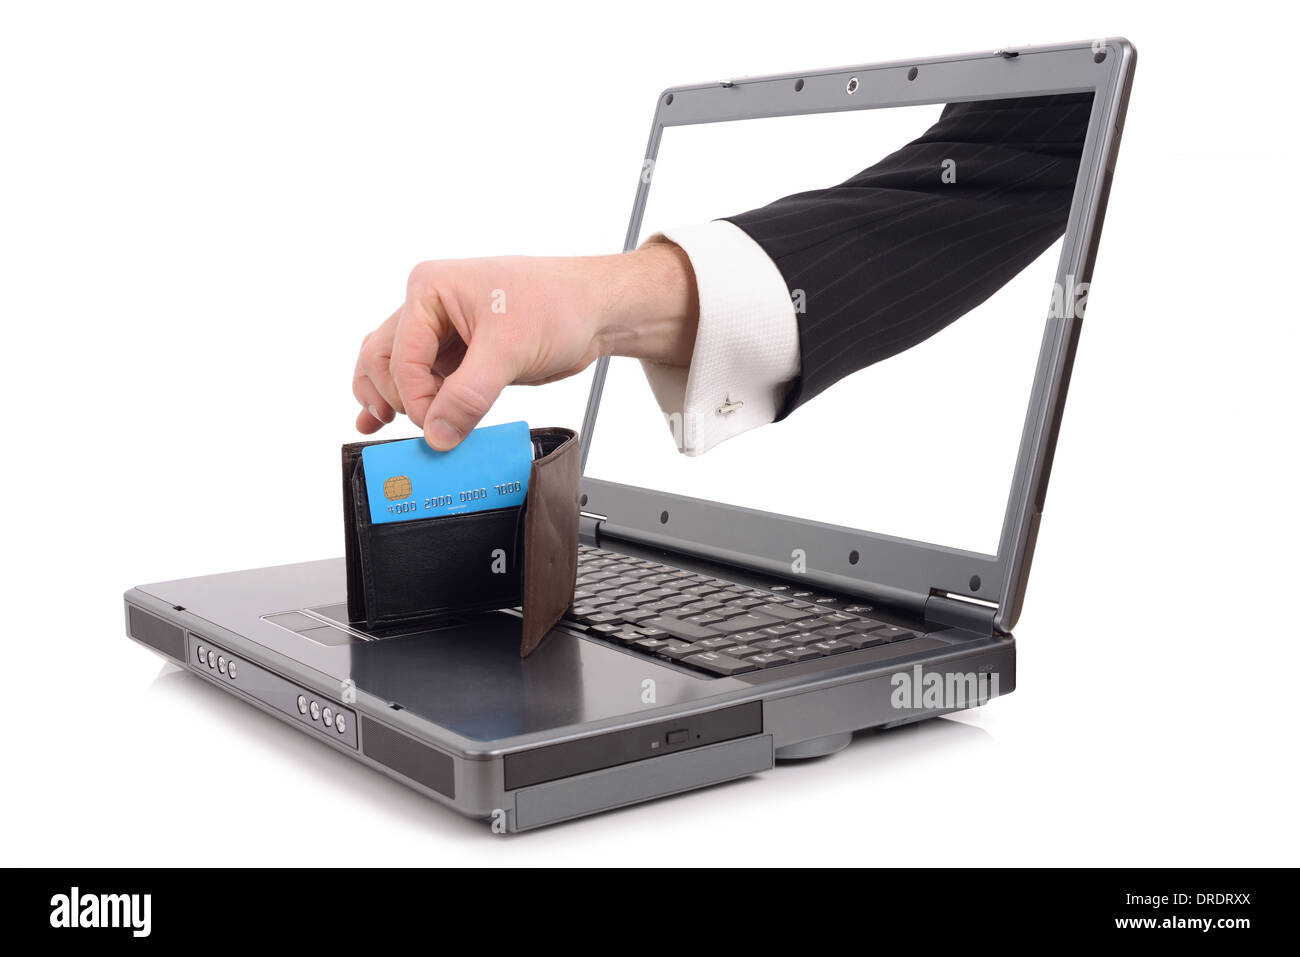 Vol au-dessus de l'Internet concept avec une main poping hors de l'écran pour voler une carte de crédit, isolé sur fond blanc Banque D'Images